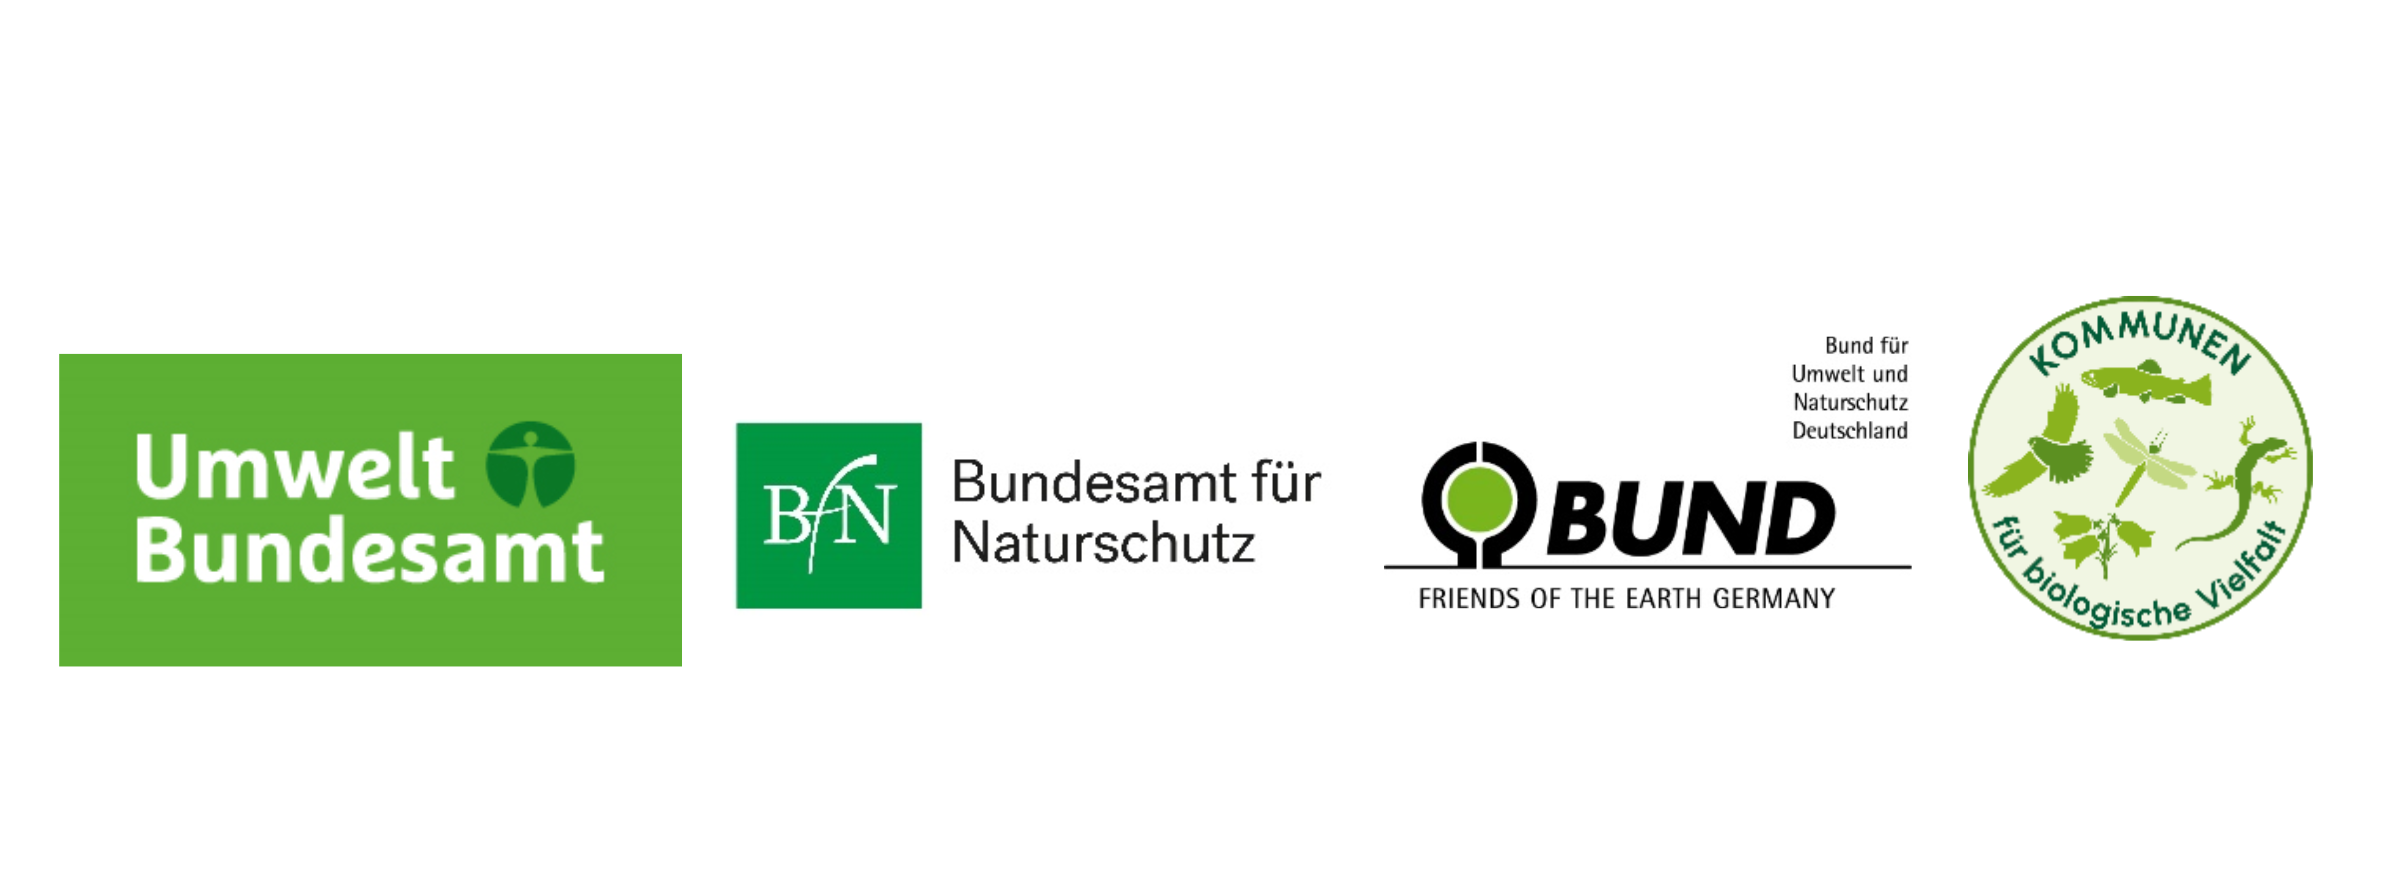 Logos von Umweltbundesamt, Bundesamt für Naturschutz, BUND und Kommunen für biologische Vielfalt